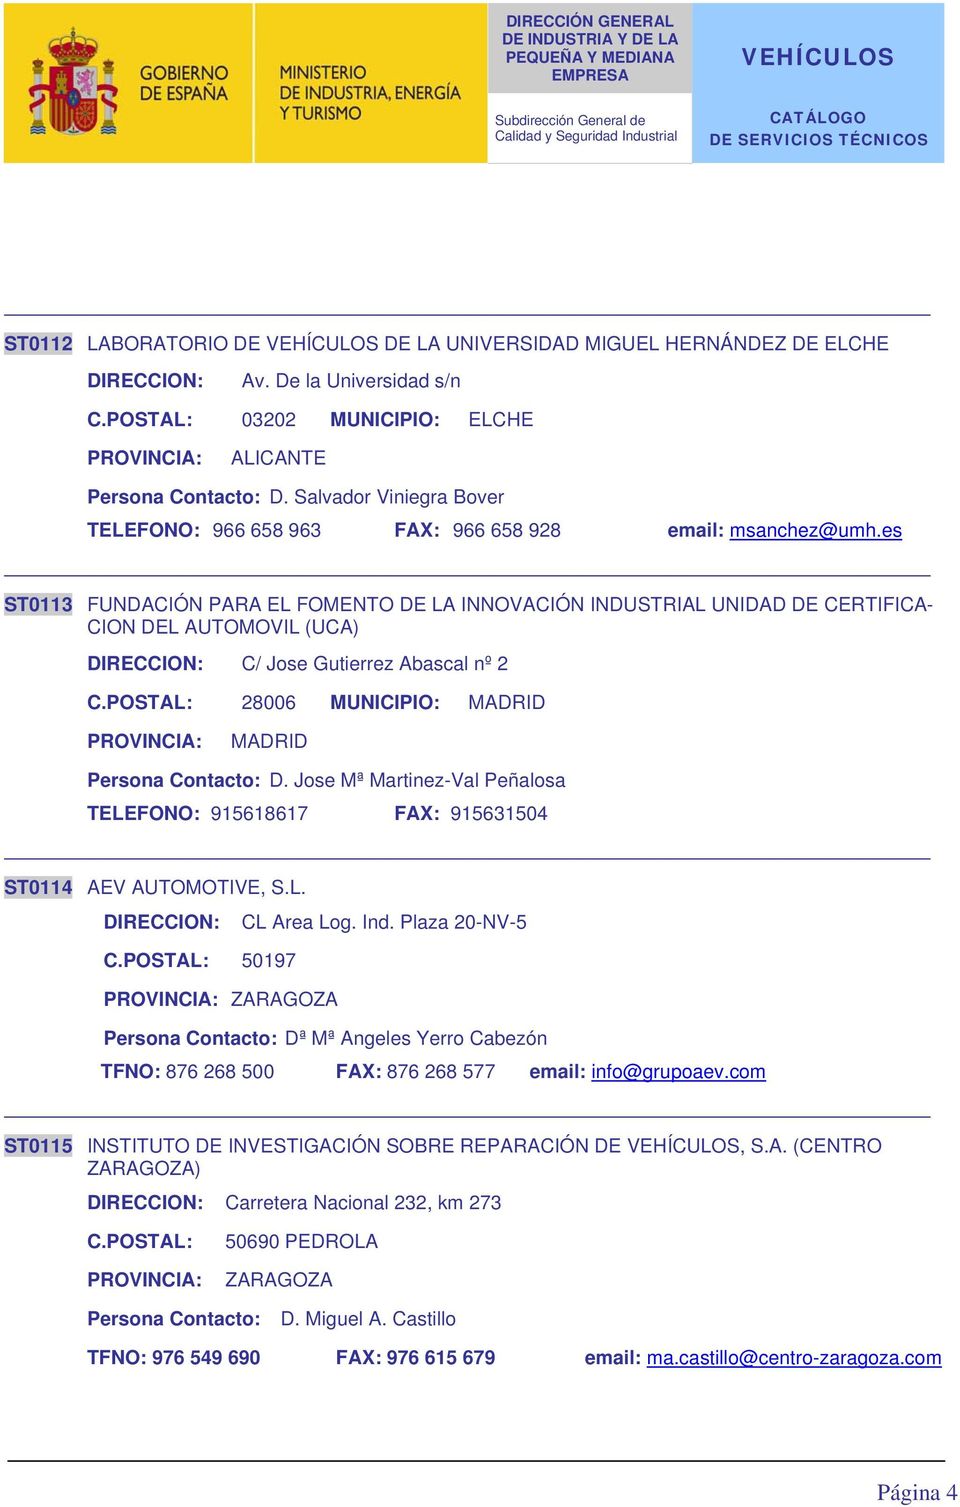 es ST0113 FUNDACIÓN PARA EL FOMENTO DE LA INNOVACIÓN INDUSTRIAL UNIDAD DE CERTIFICA- CION DEL AUTOMOVIL (UCA) DIRECCION: C/ Jose Gutierrez Abascal nº 2 C.